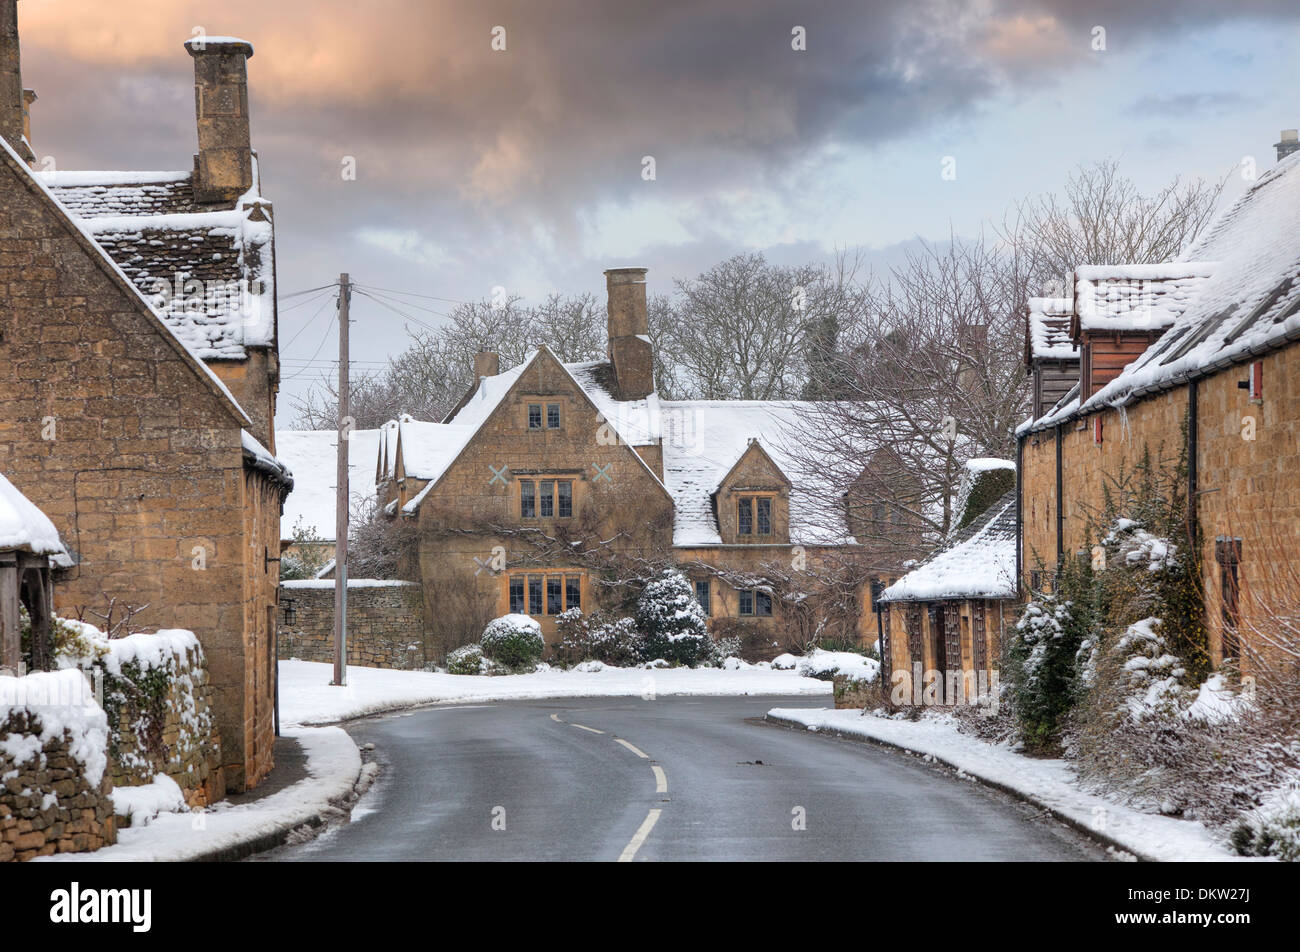 Villaggio costwold nella neve, Weston Subedge vicino a Chipping Campden, Gloucestershire, Inghilterra. Foto Stock